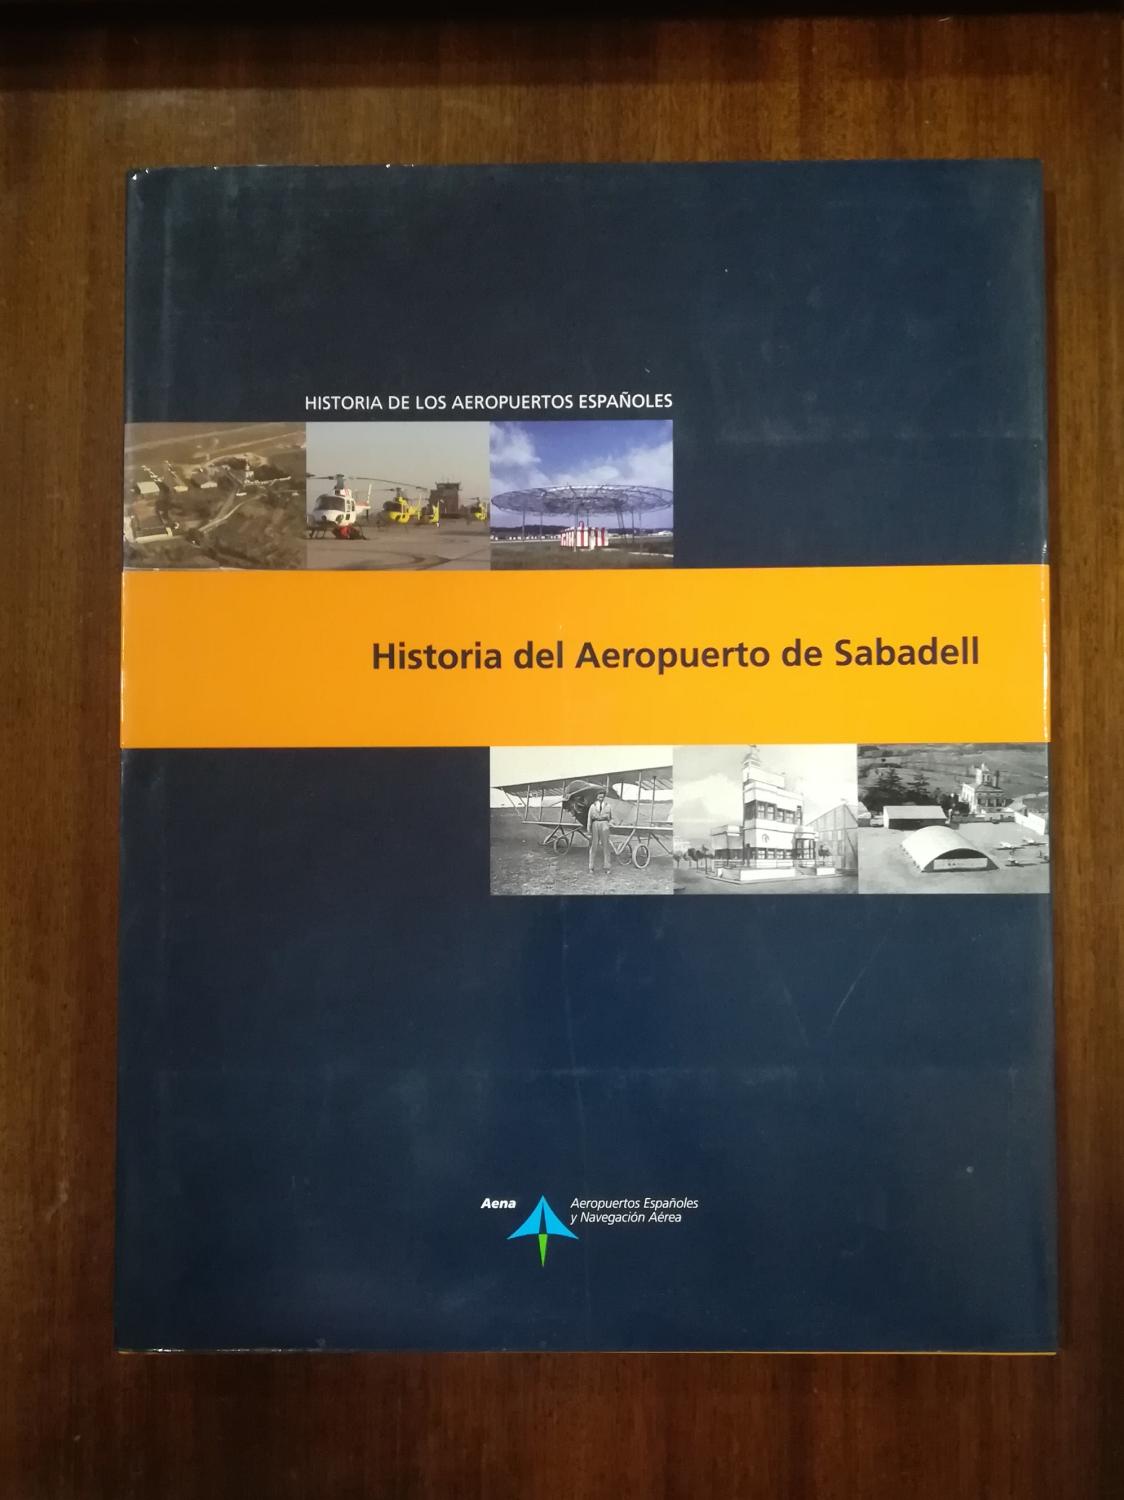 Historia del Aeropuerto de Sabadell (Historia de los aeropuertos españoles) - Luis Utrilla; José Fernández